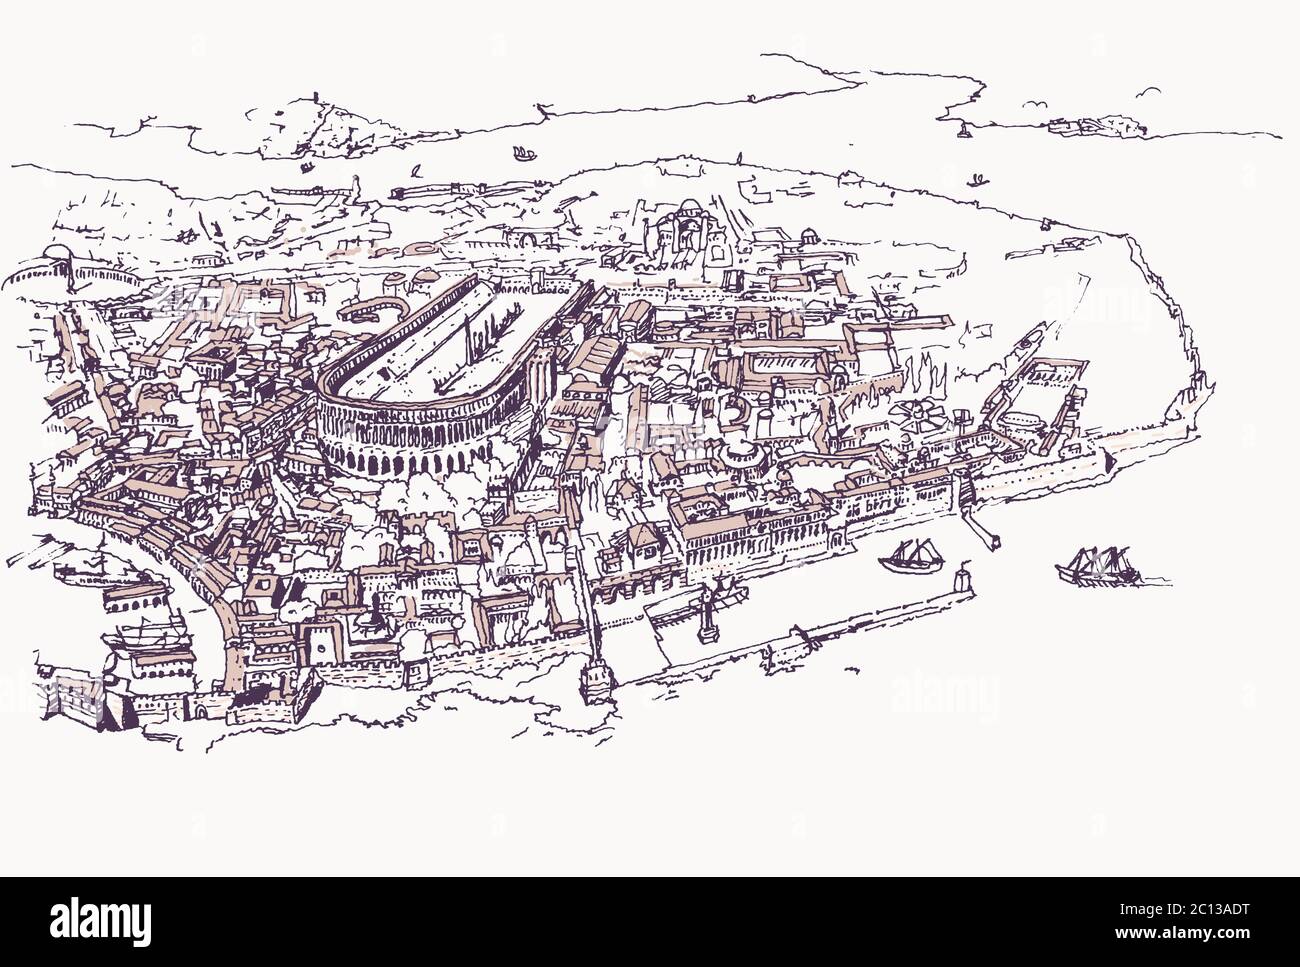 Zeichnung Skizzendarstellung der alten Konstantinopel Altstadt, das heutige Istanbul. Mittelalterliches Modell der byzantinischen Stadt. Stock Vektor